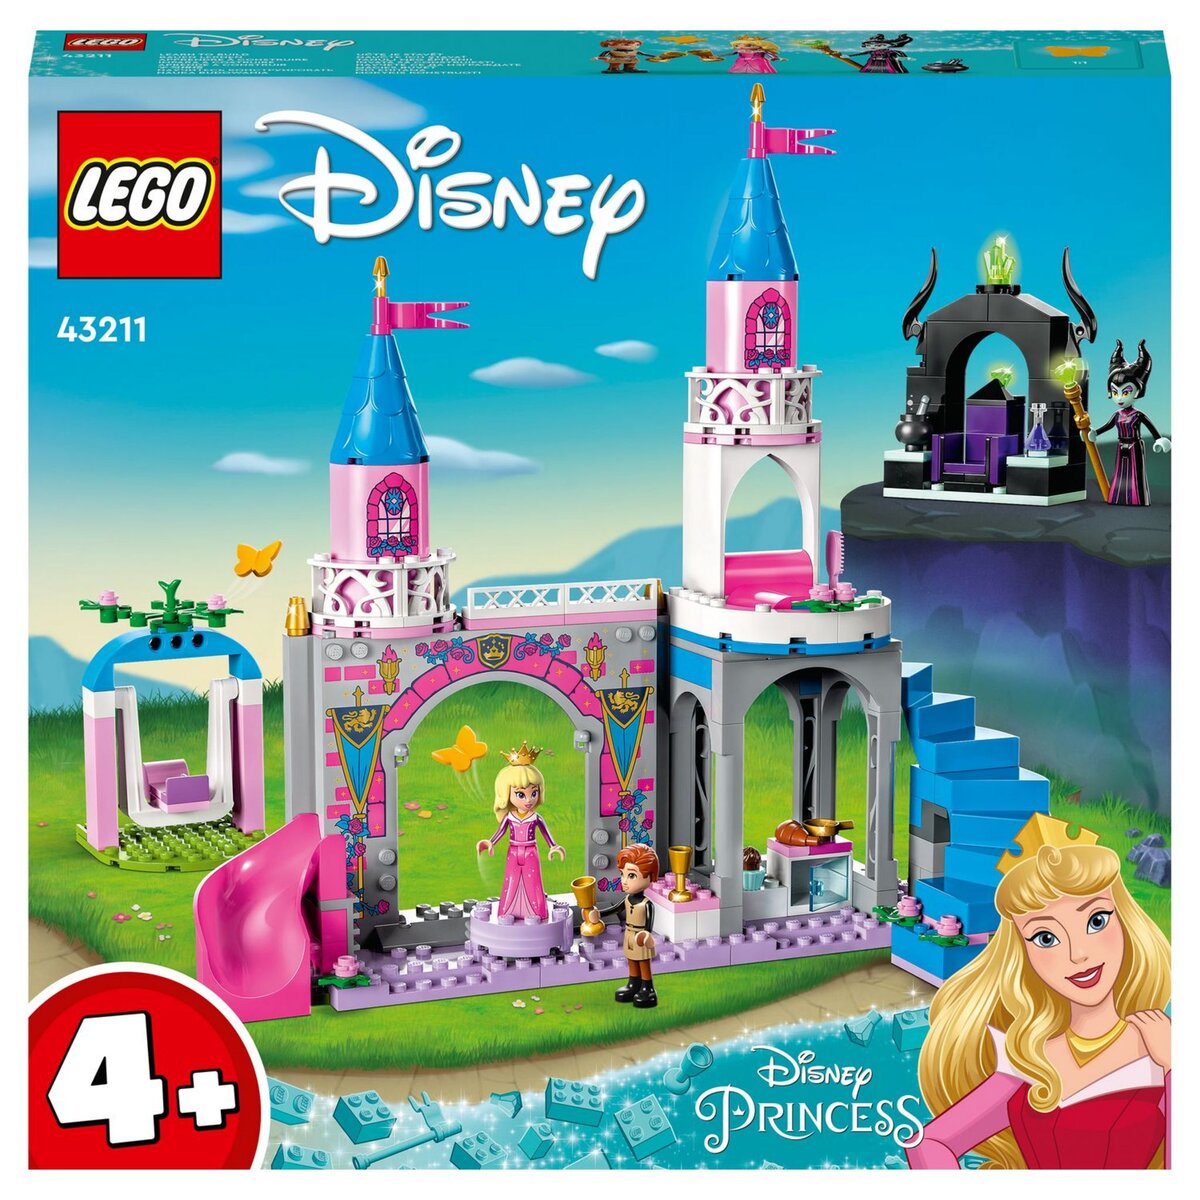 Coffret Le Château de Belle - Disney Princesses